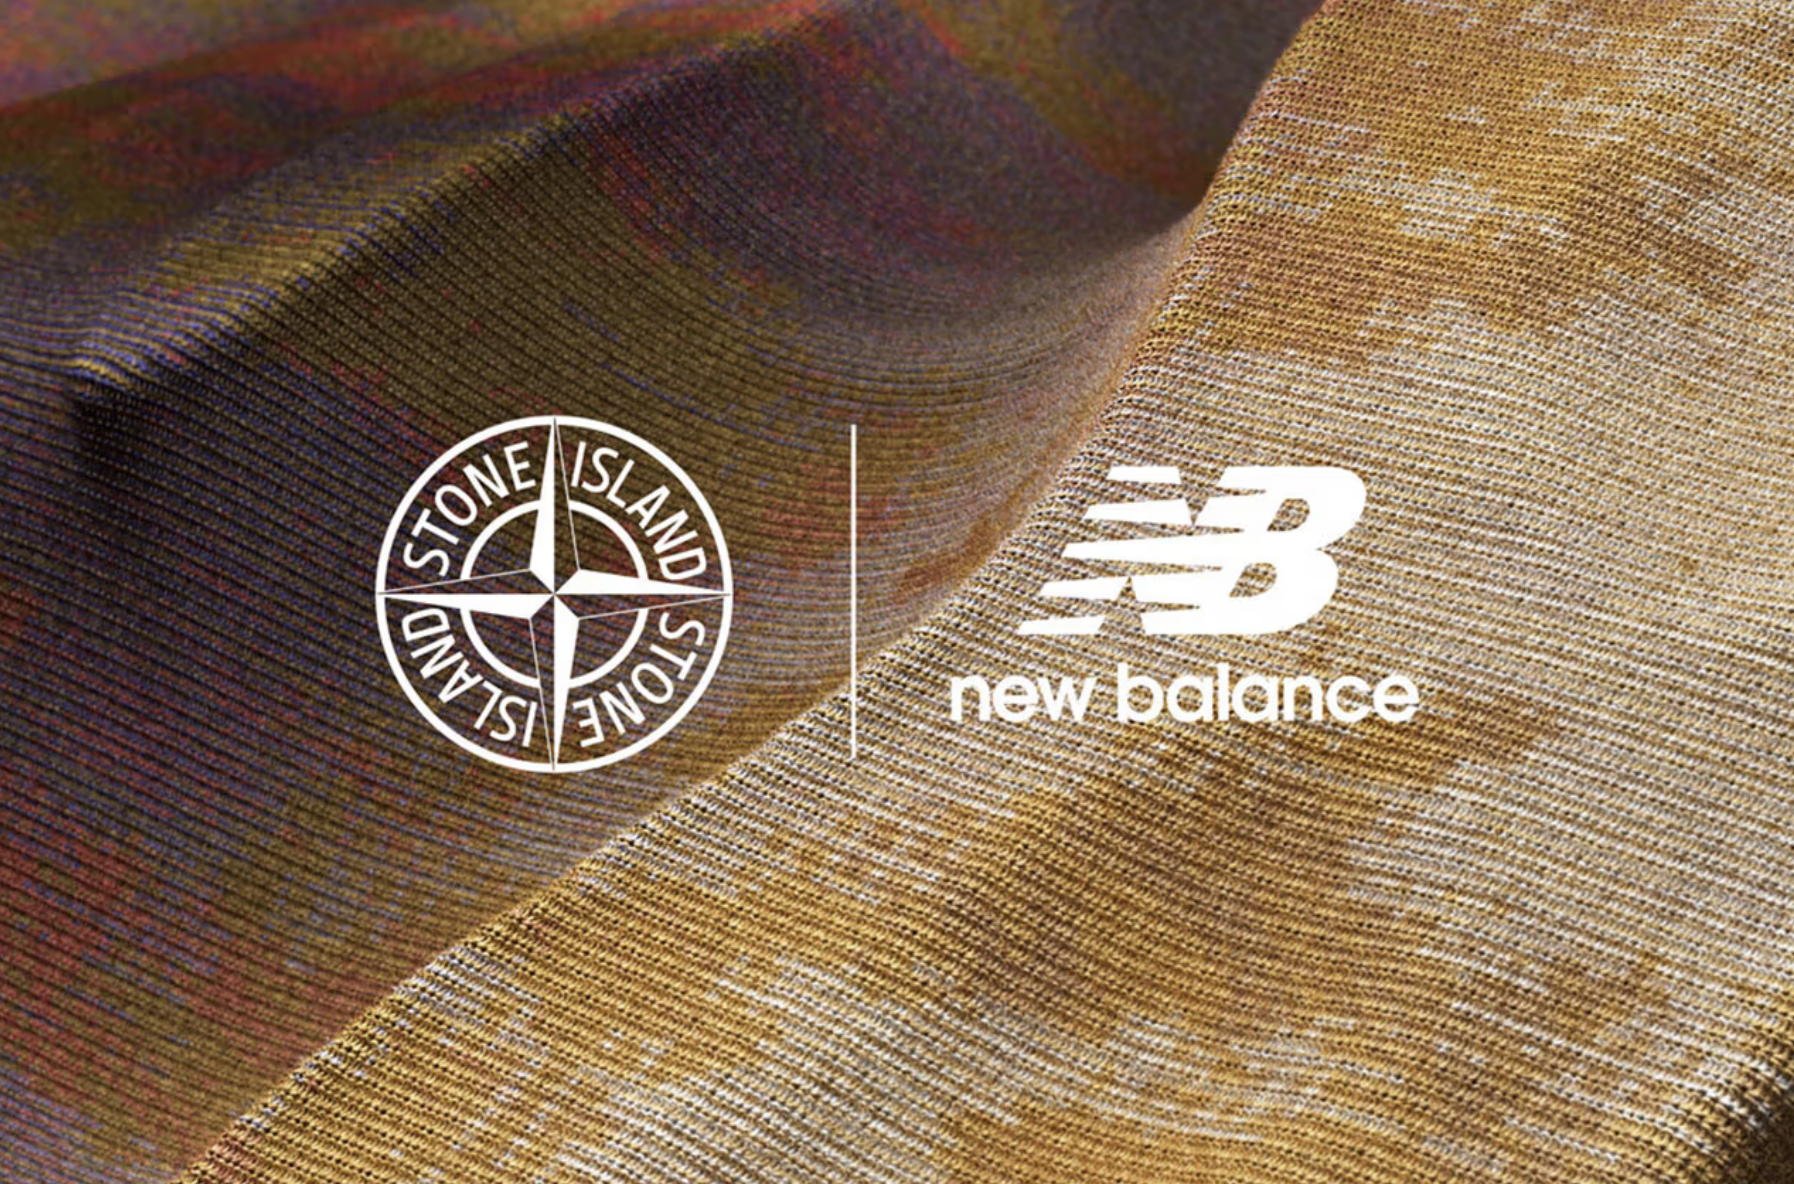 Stone Island x New Balance : une collaboration prometteuse en vue - HYTRAPE